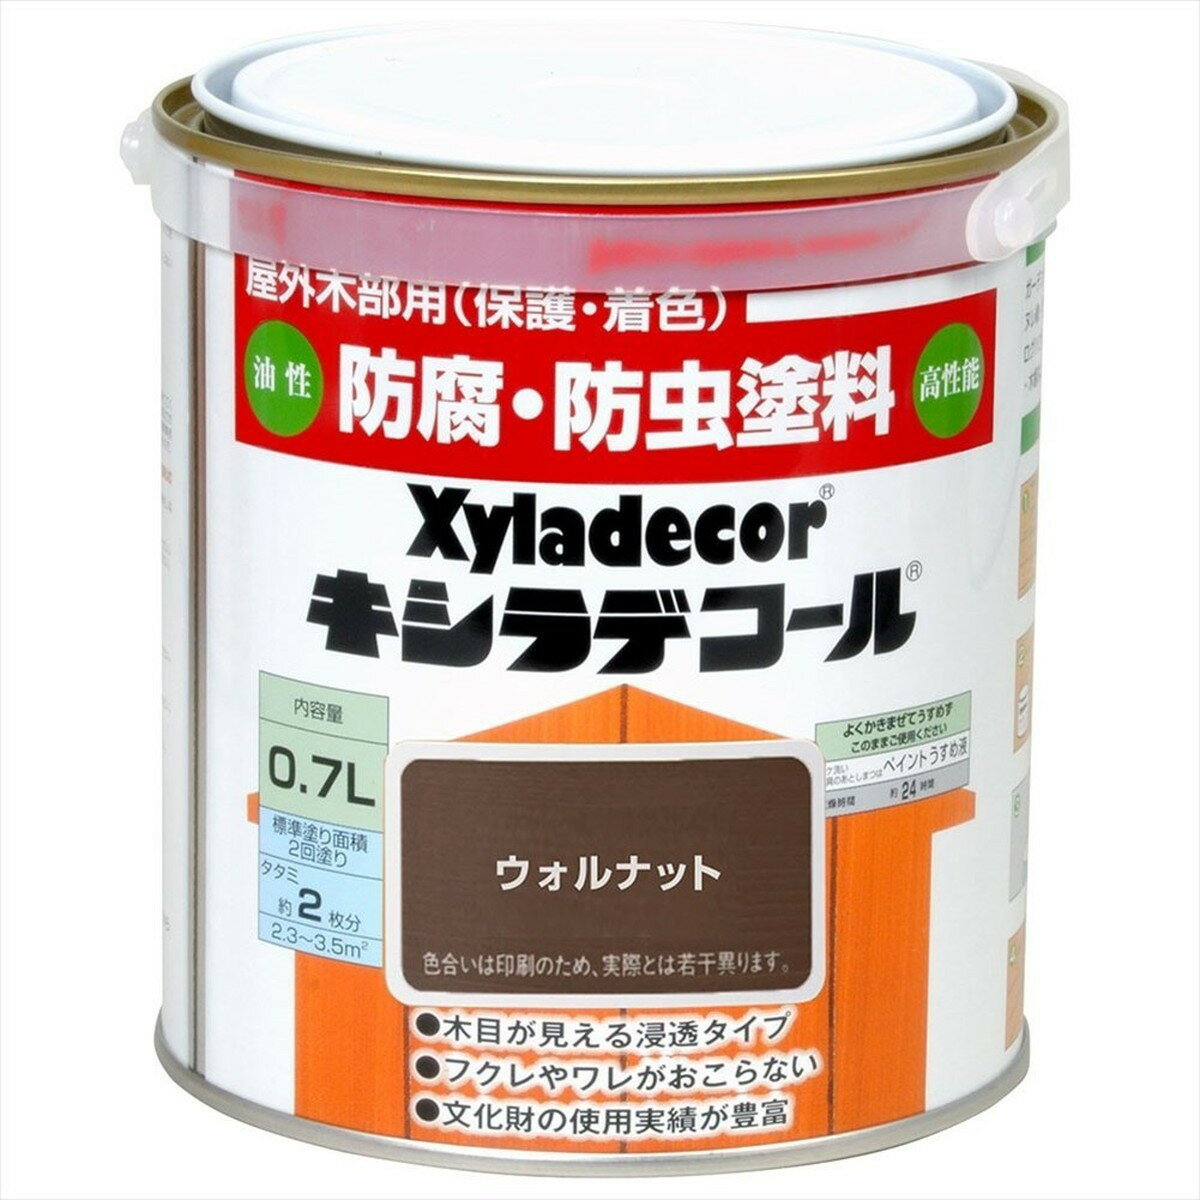 大阪ガスケミカル株式会社 キシラデコール ウォルナット 0.7L 塗料 補修用品 住宅資材